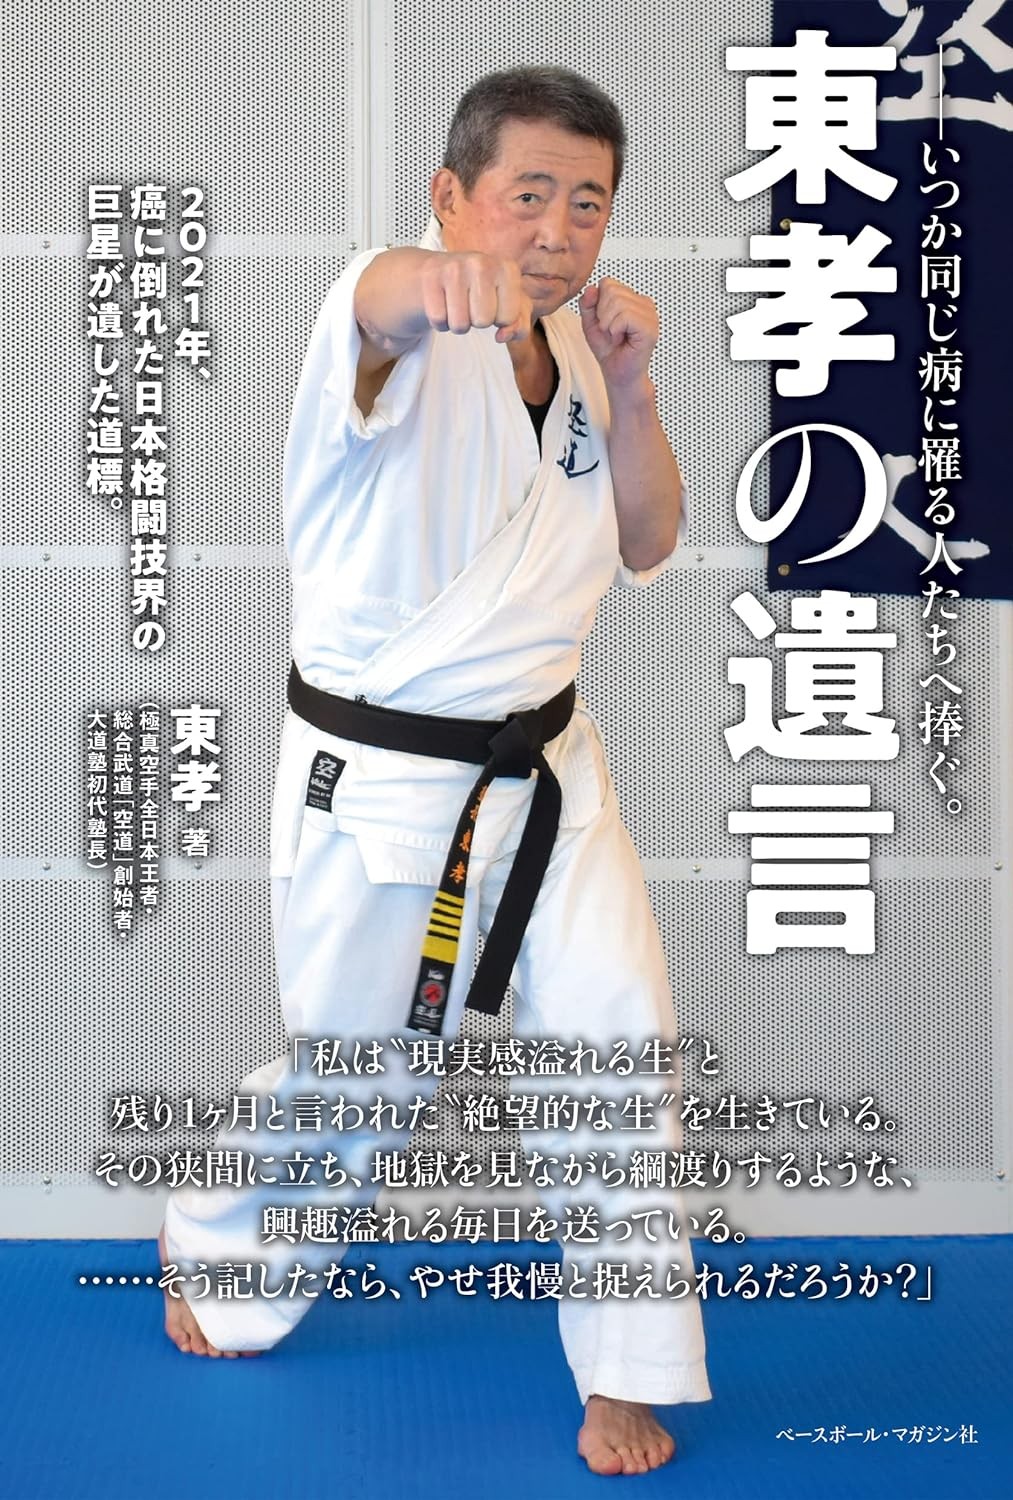 大道塾 着衣総合格闘技 空道 part.2 フルコンタクト空手 MMA - DVD